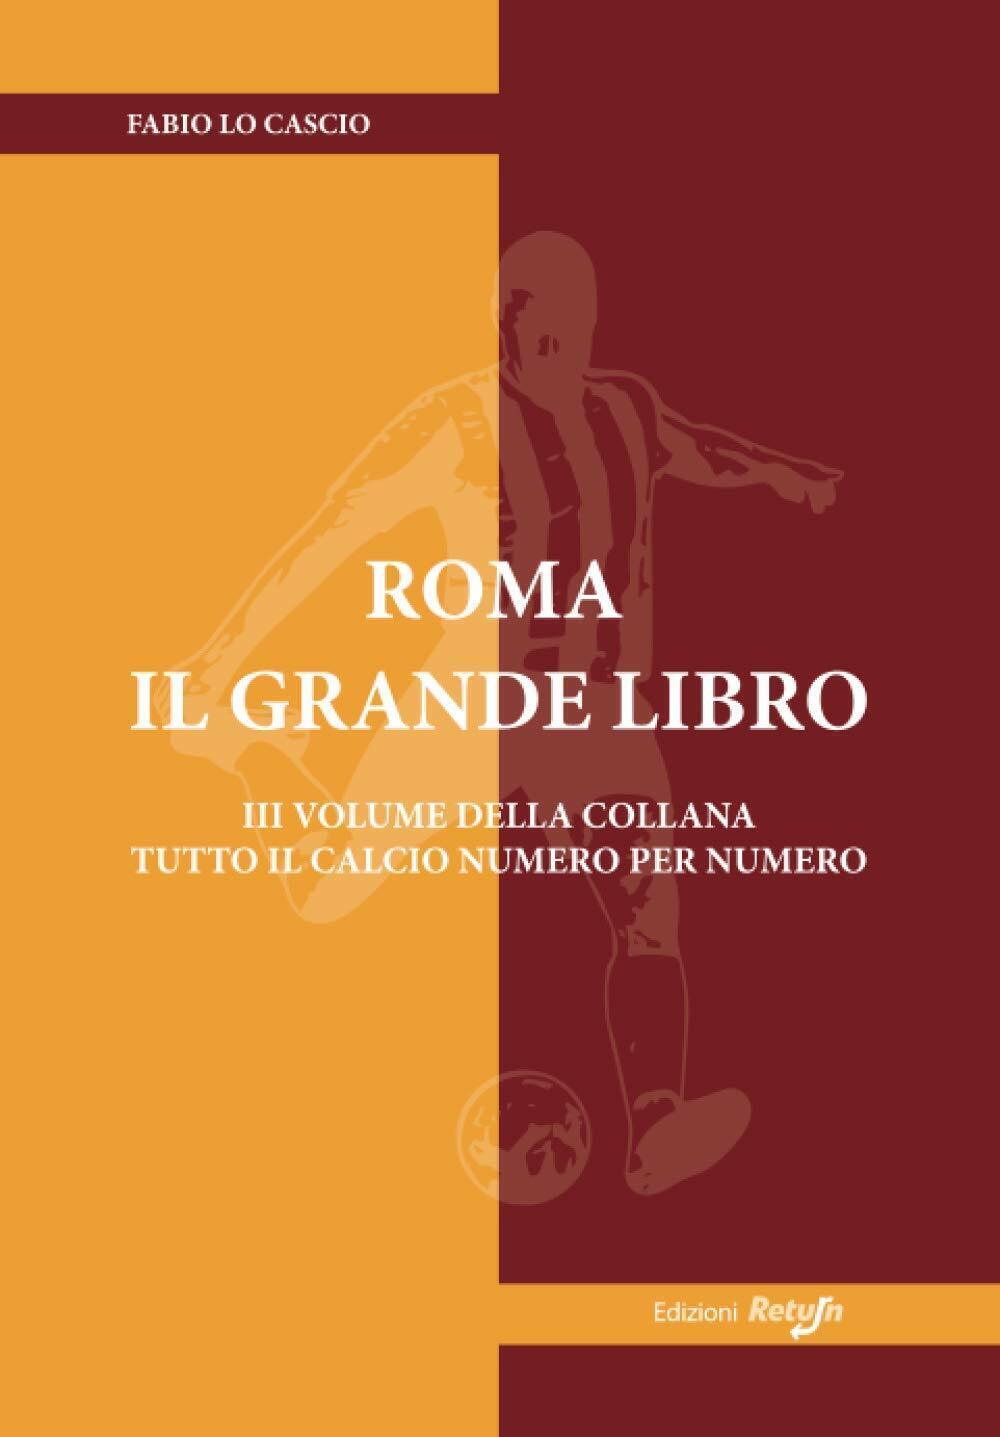 Roma il Grande Libro - Fabio Lo Cascio Return, 2019